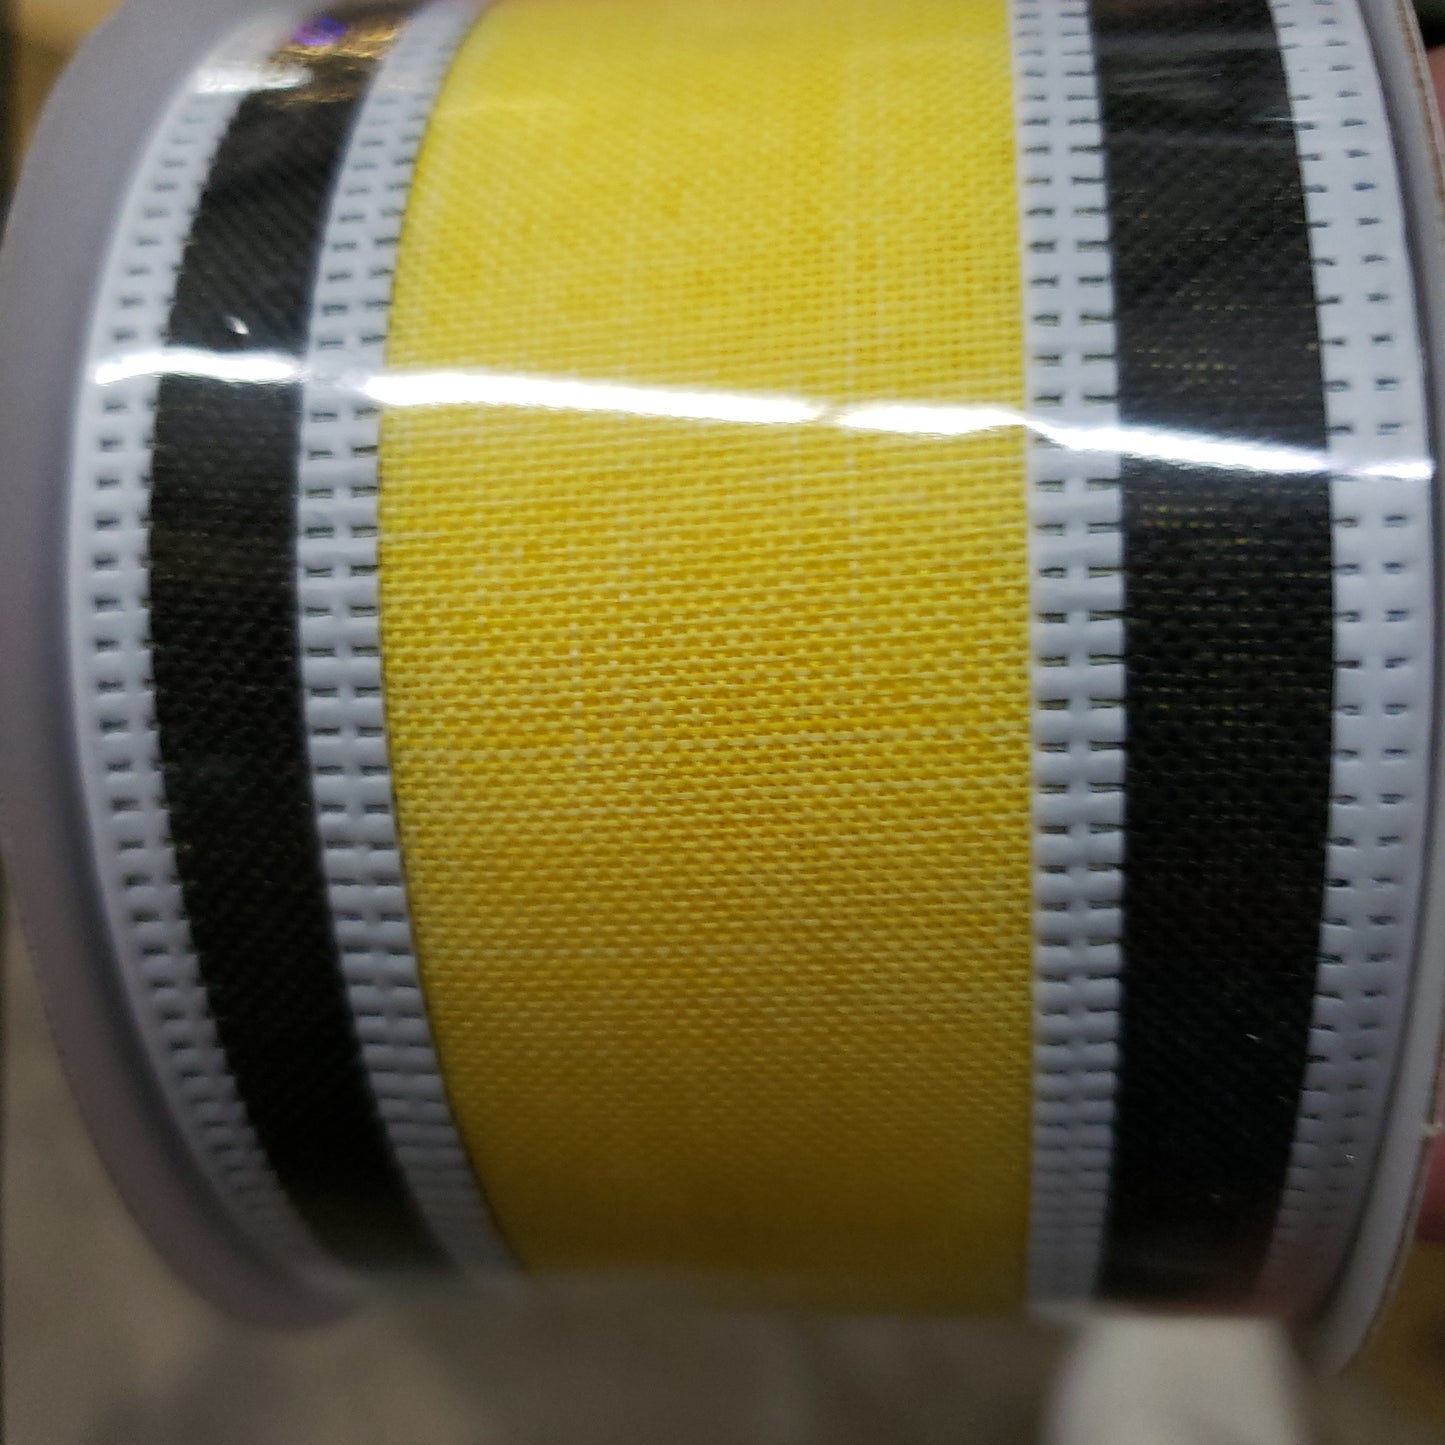 2.5" x 10 yard black white yellow stripe ribbon